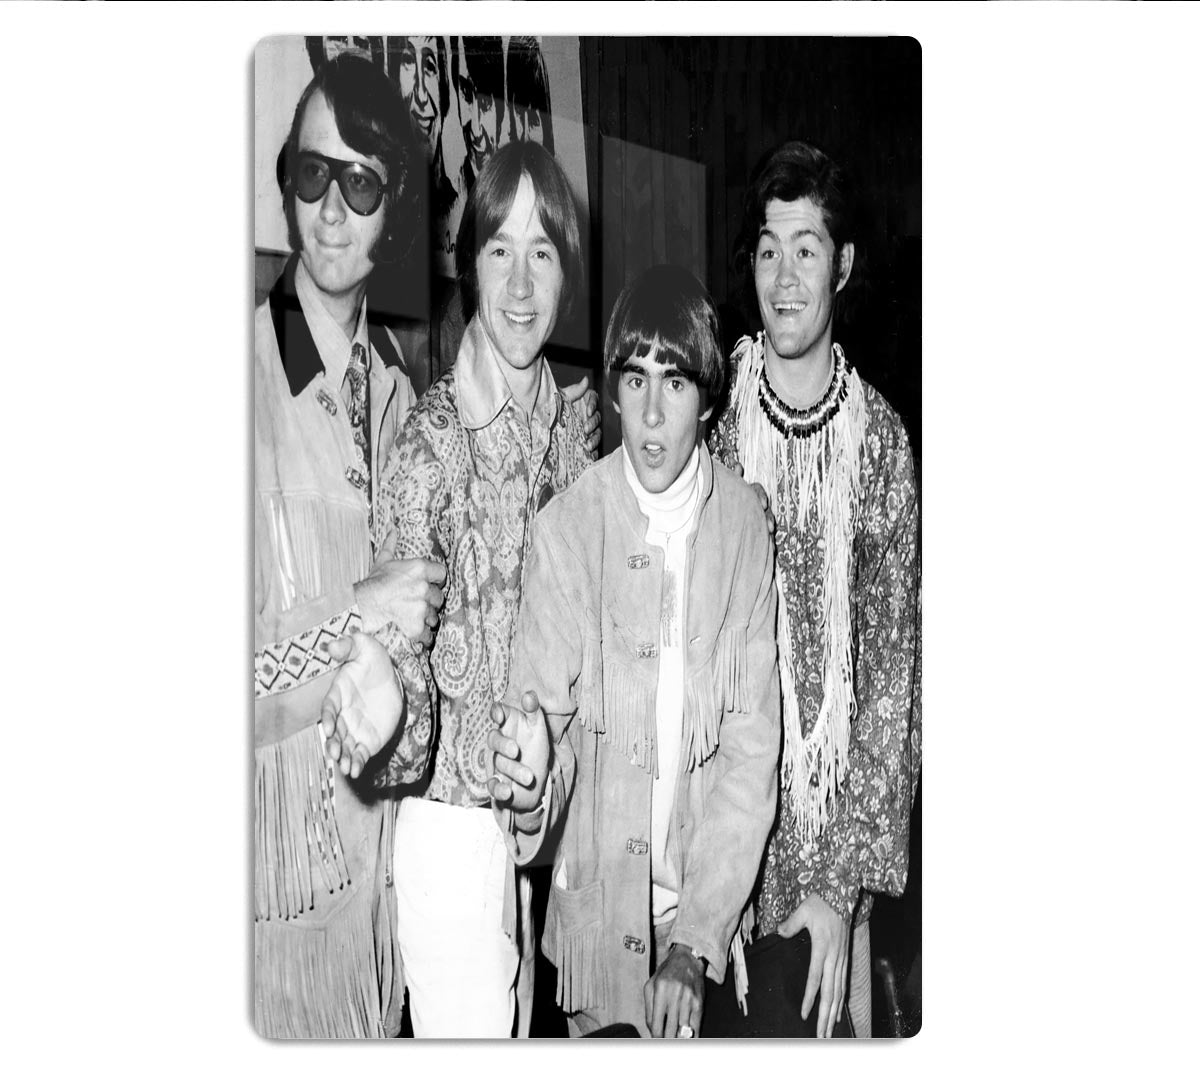 The Monkees in paisley HD Metal Print